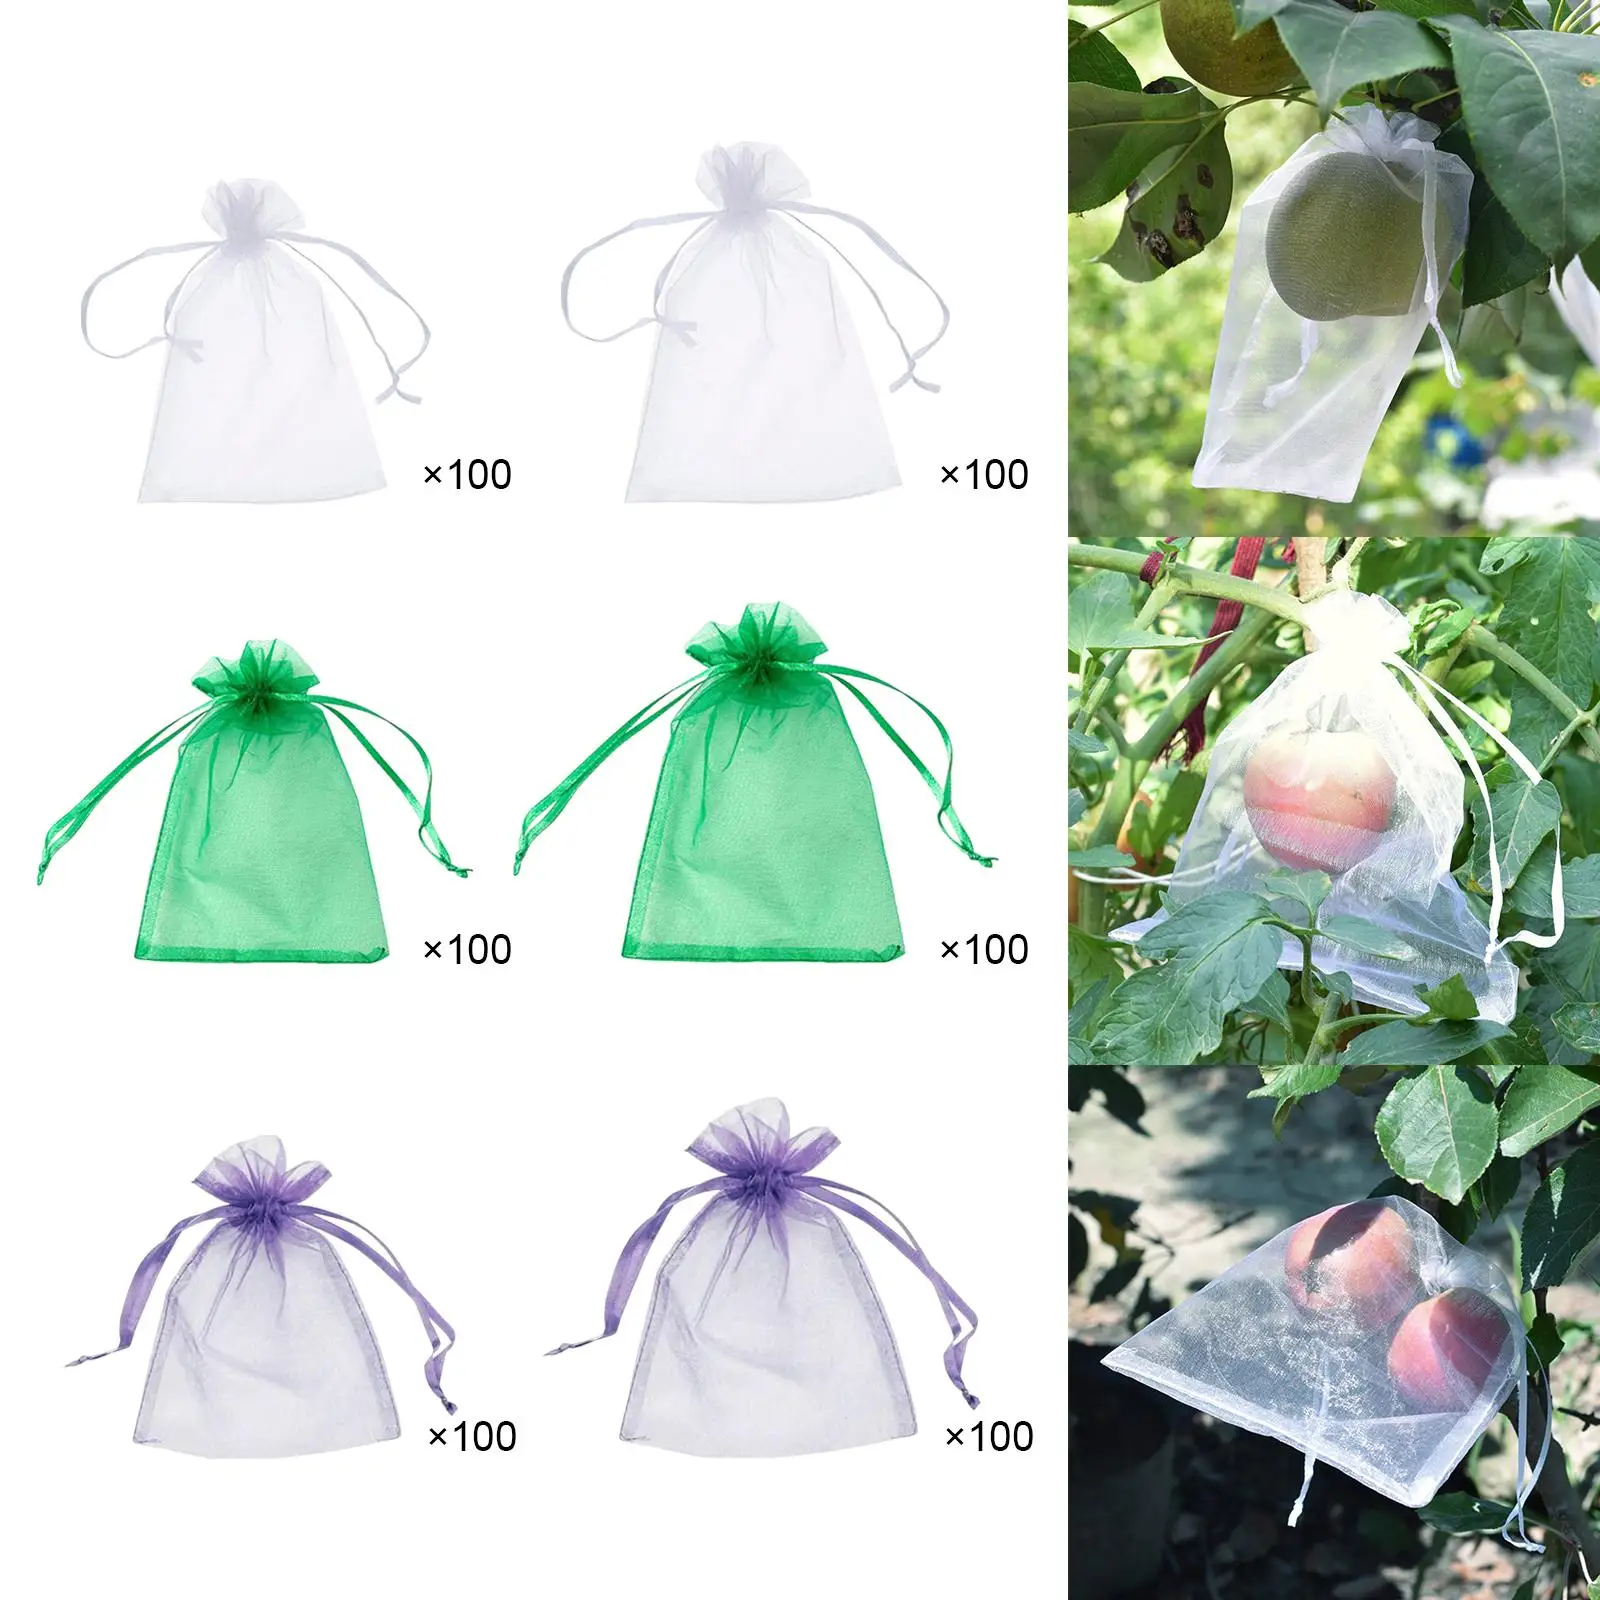 100x Garden Drawstring Netting Mesh Bags Drawstring Netting Barrier Bags Vegetable Plant Bags for Trees Vegetables